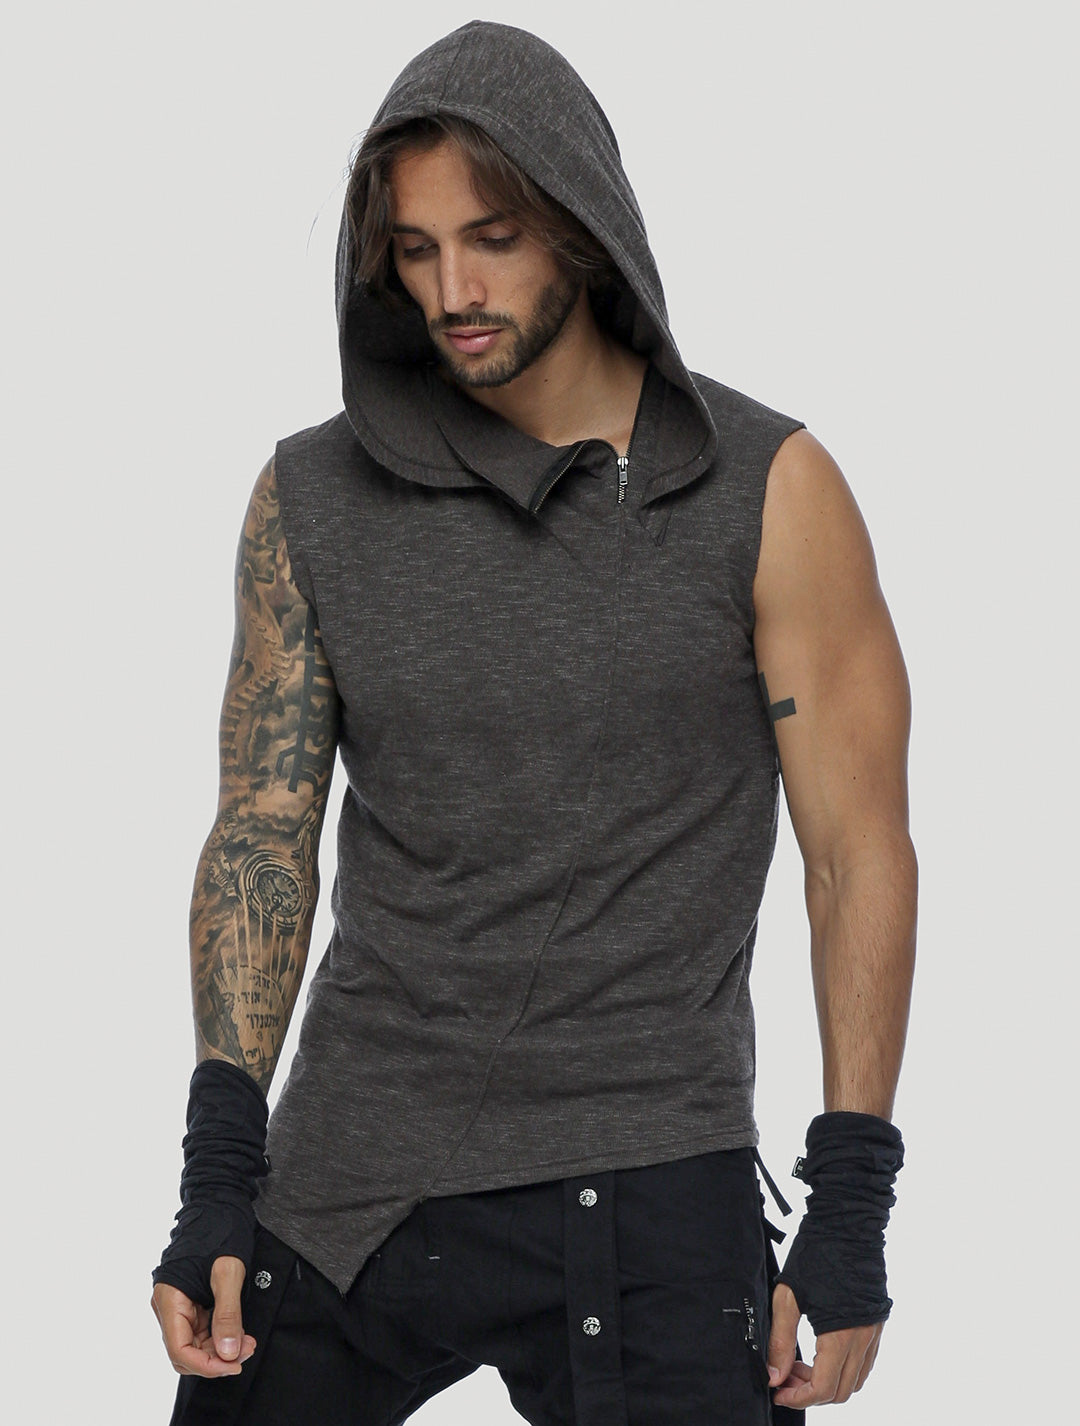 men's sleeveless hooded t shirt